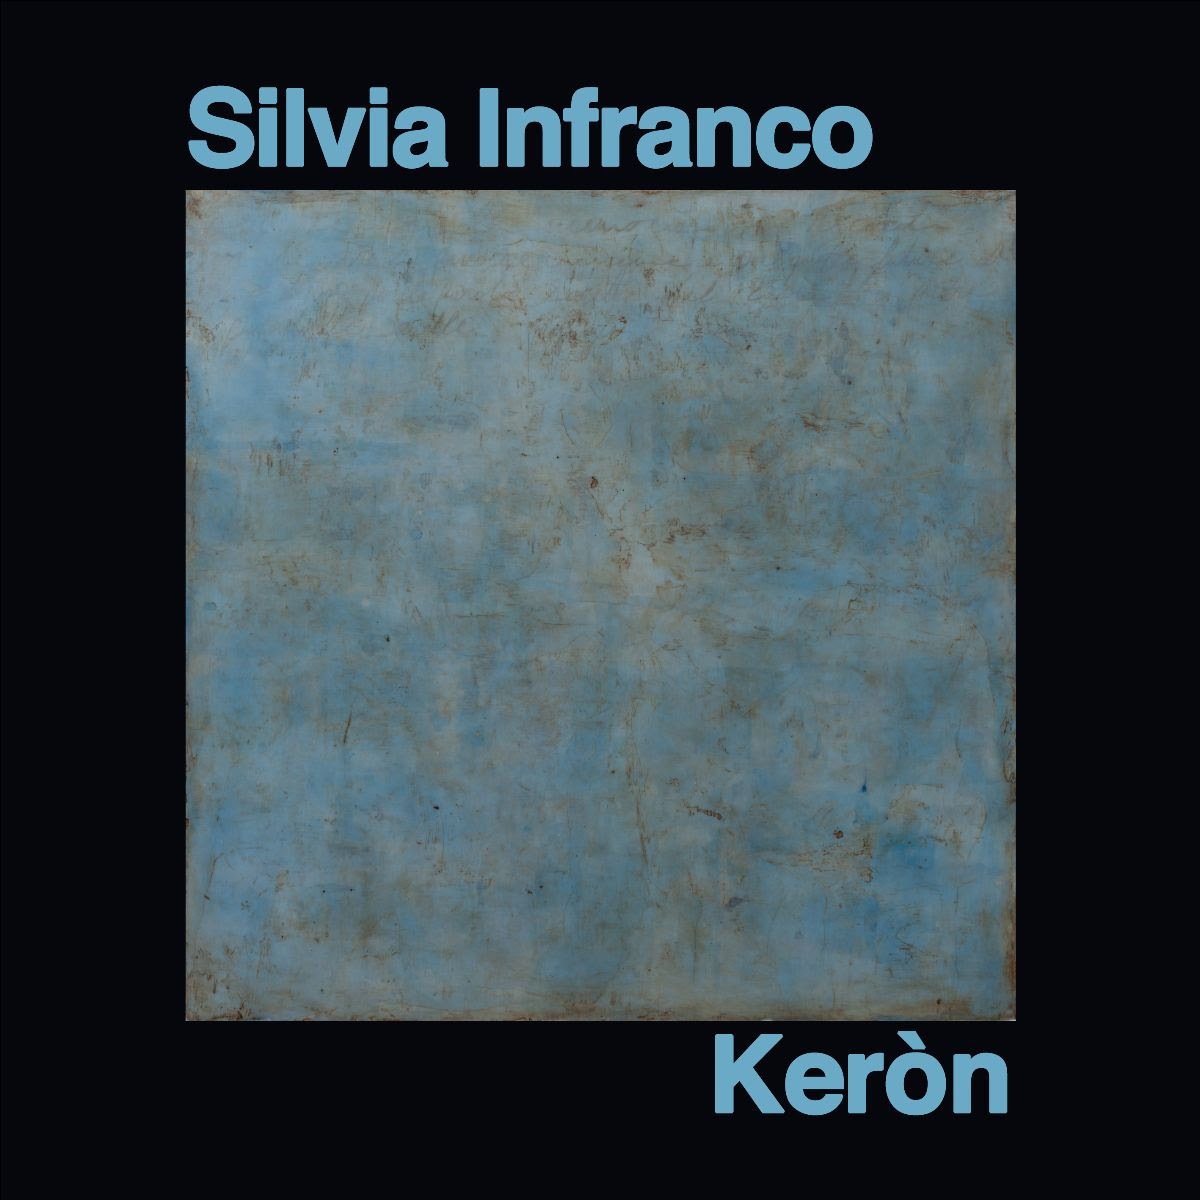 Silvia Infranco – Keròn